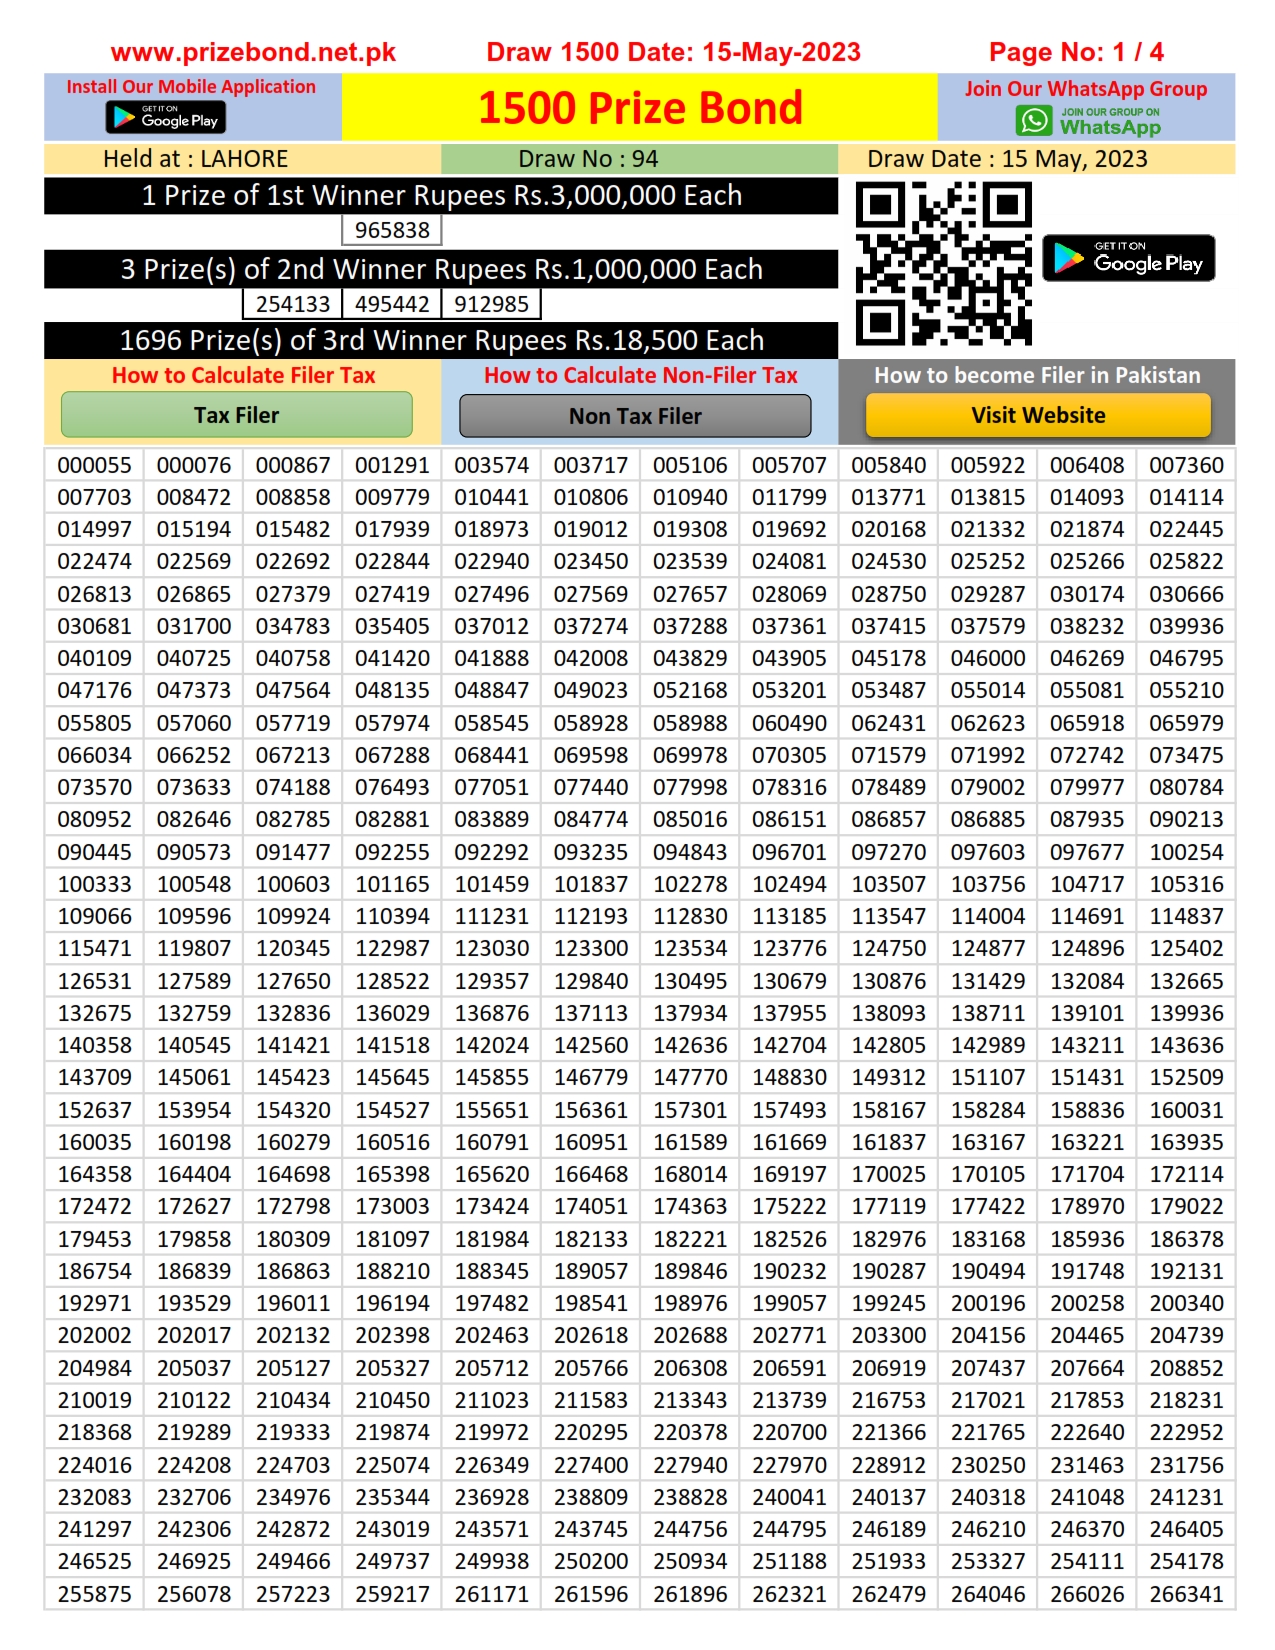 1500 Prize bond Download HD Image as .JPG .Xlsx & .pdf Page 1